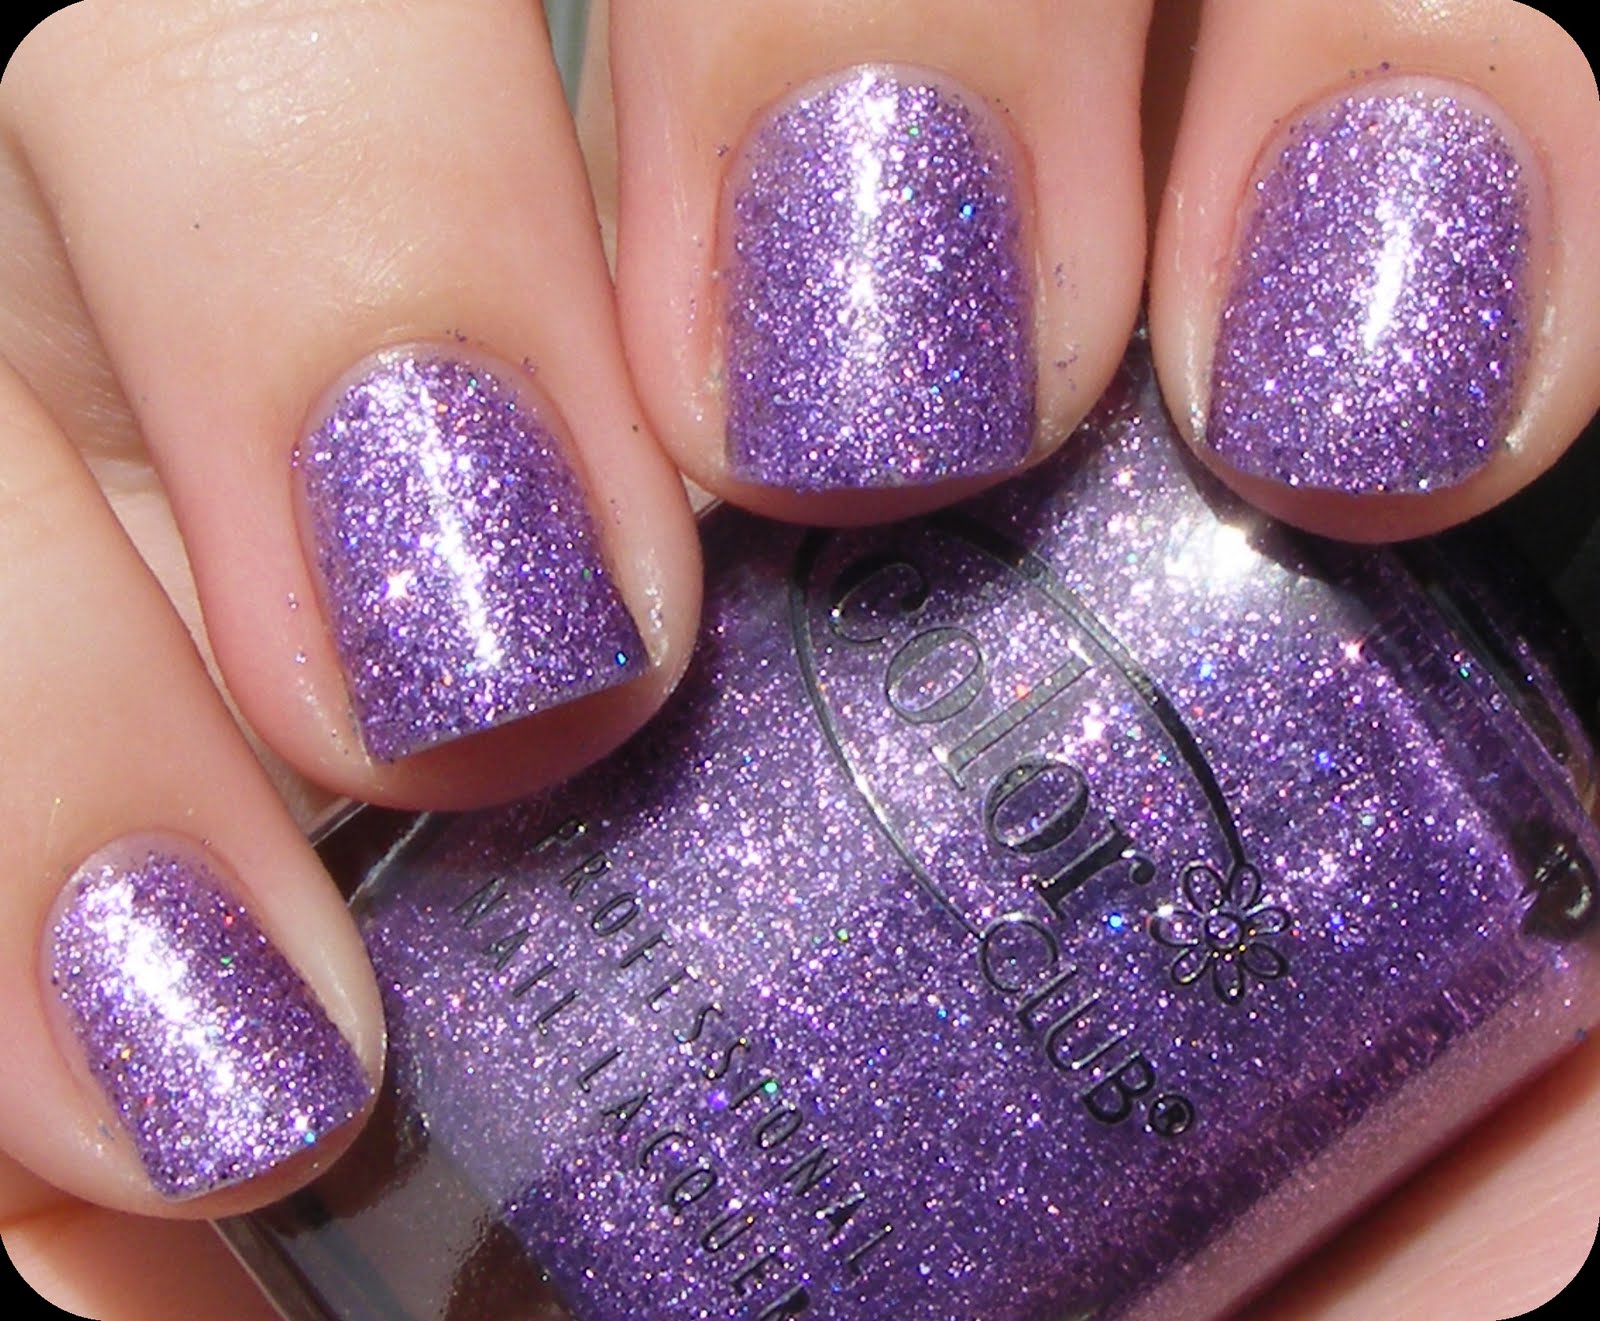 3. Black and Purple Glitter Nail Design - wide 6